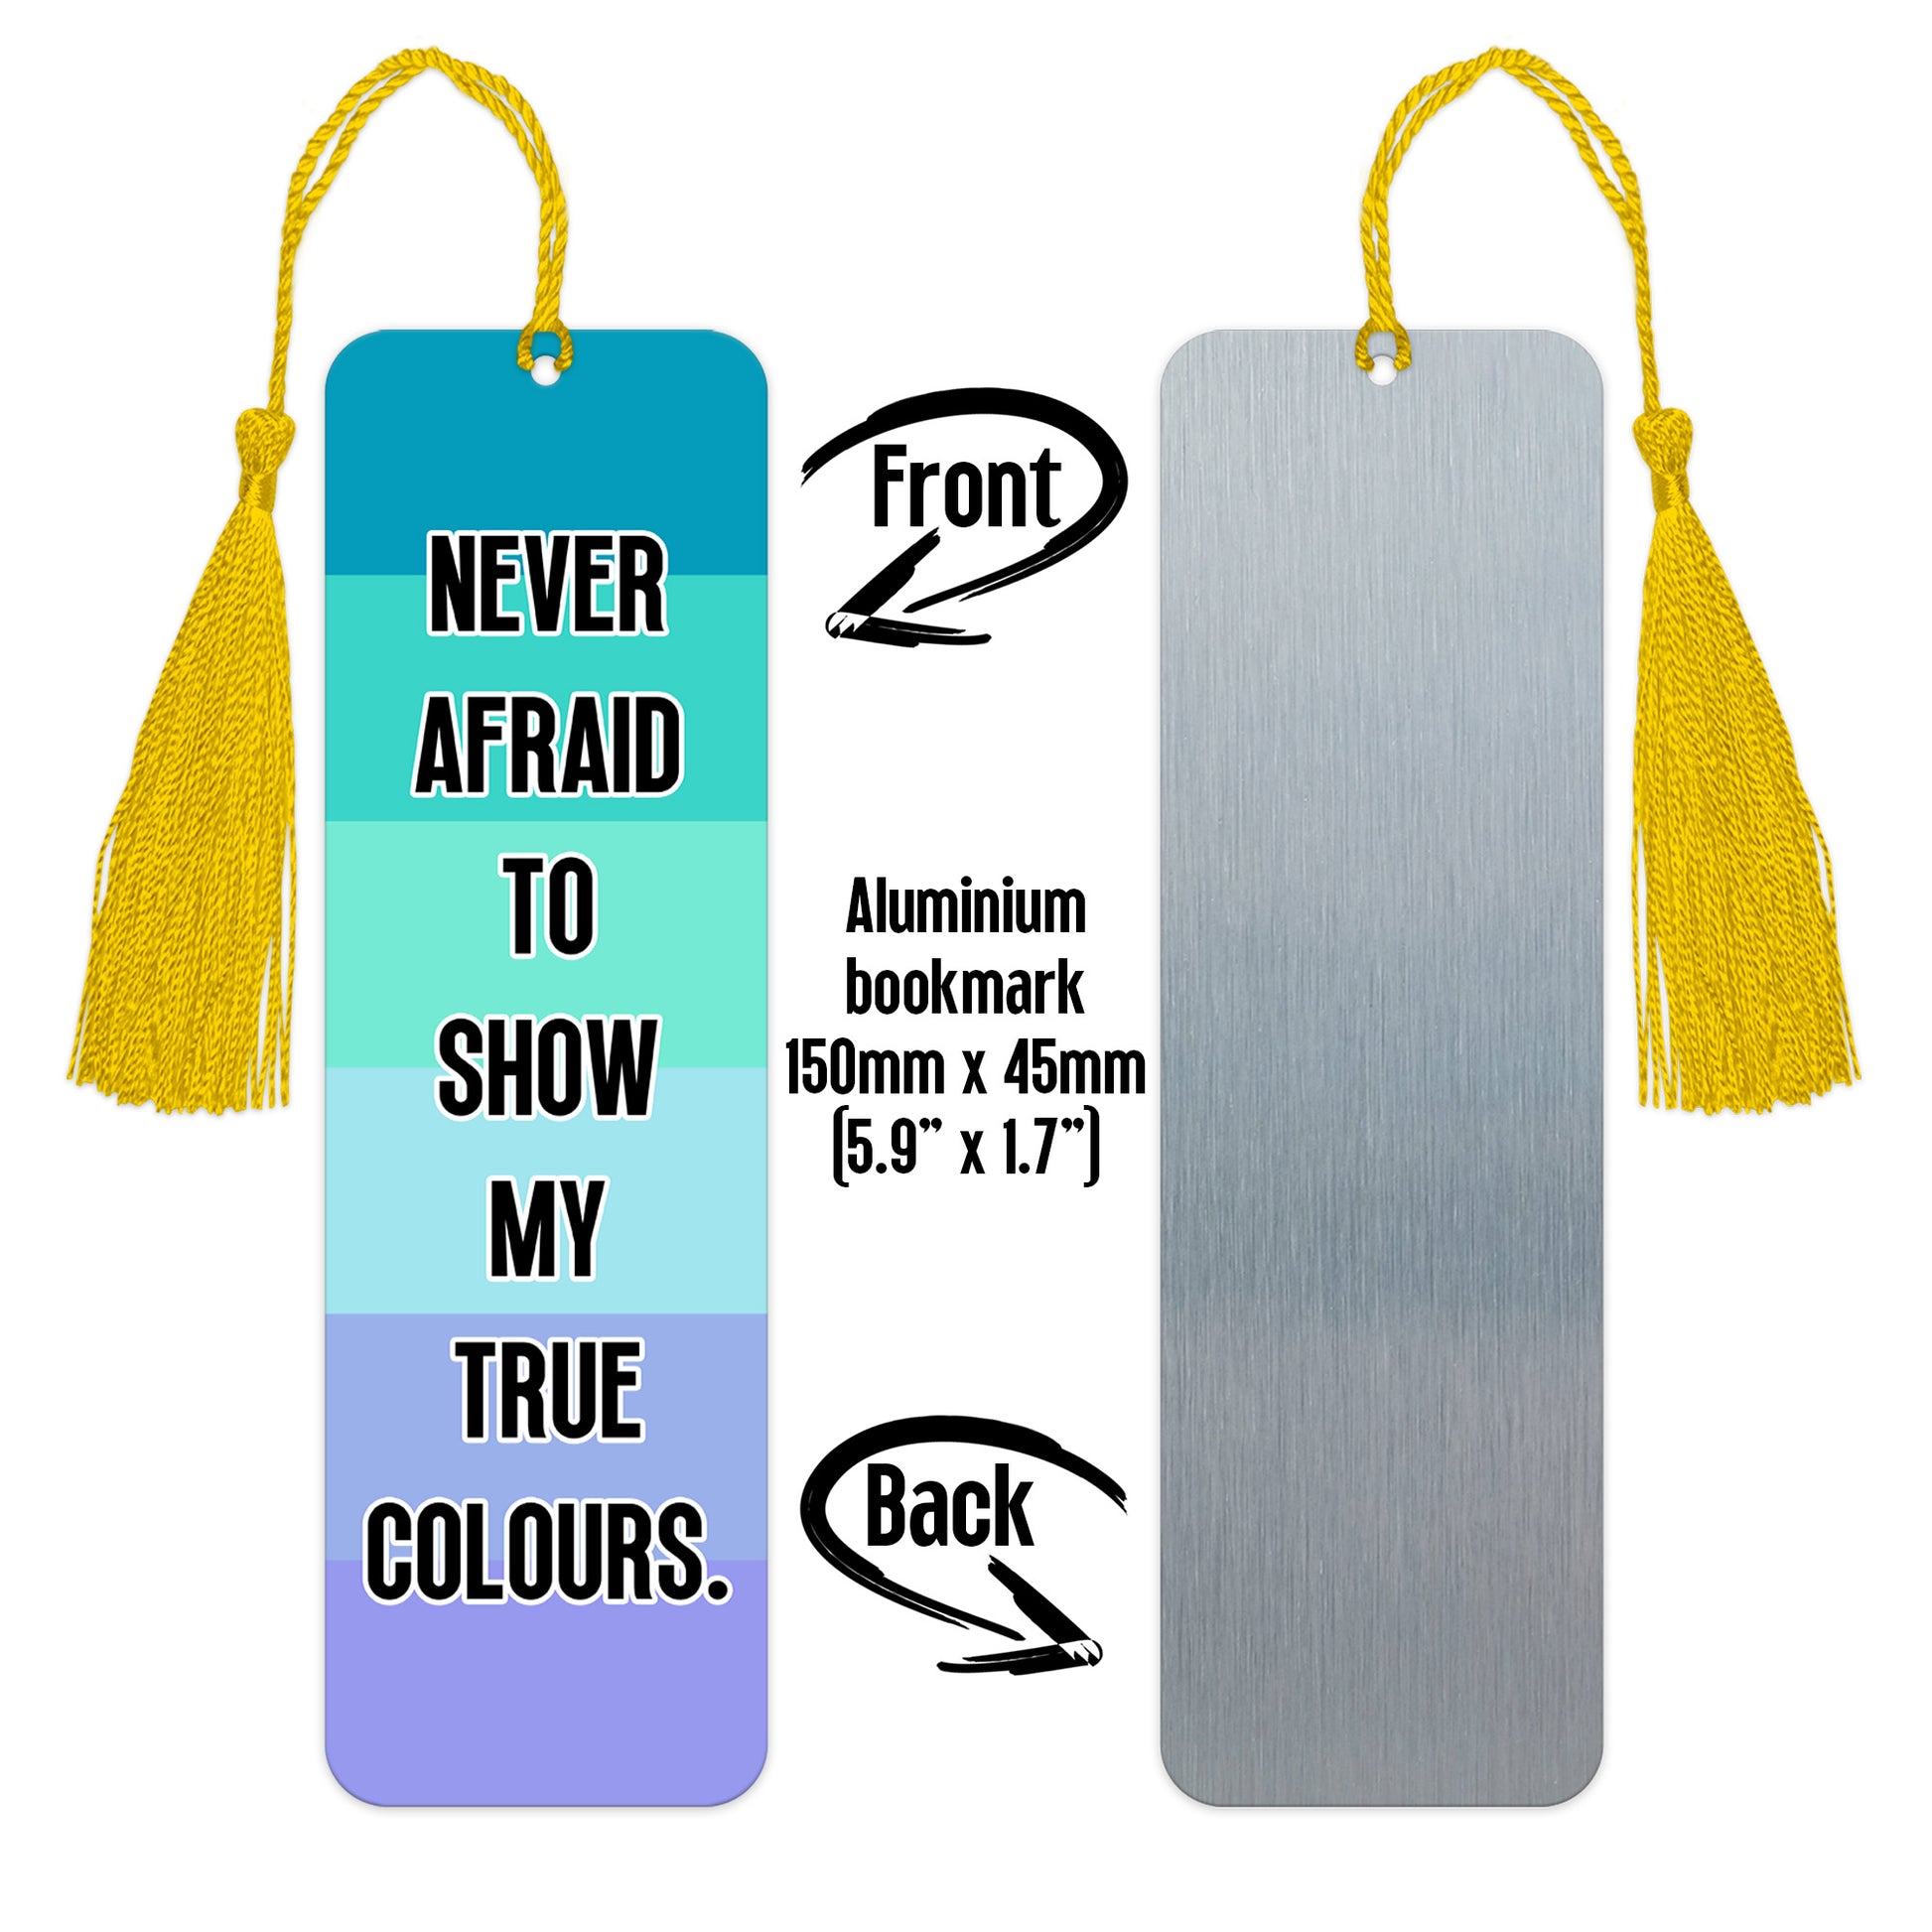 Neptunic pride luxury aluminium bookmark never afraid to show my true colours